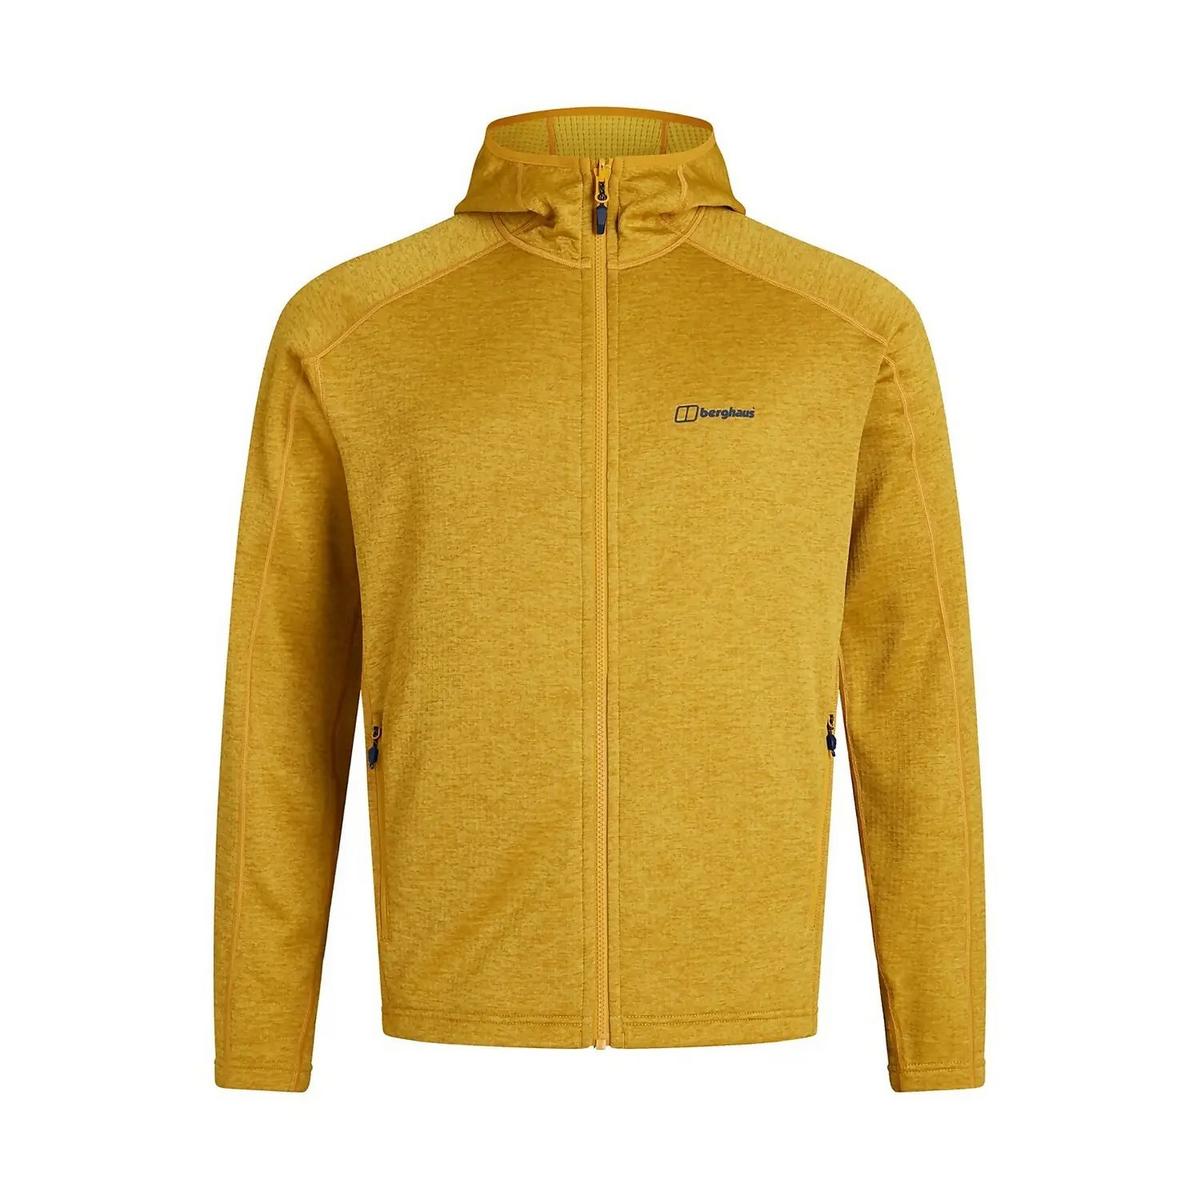 Berghaus Men's Spitzer Hooded Jacket - ArrowWood / Lemon